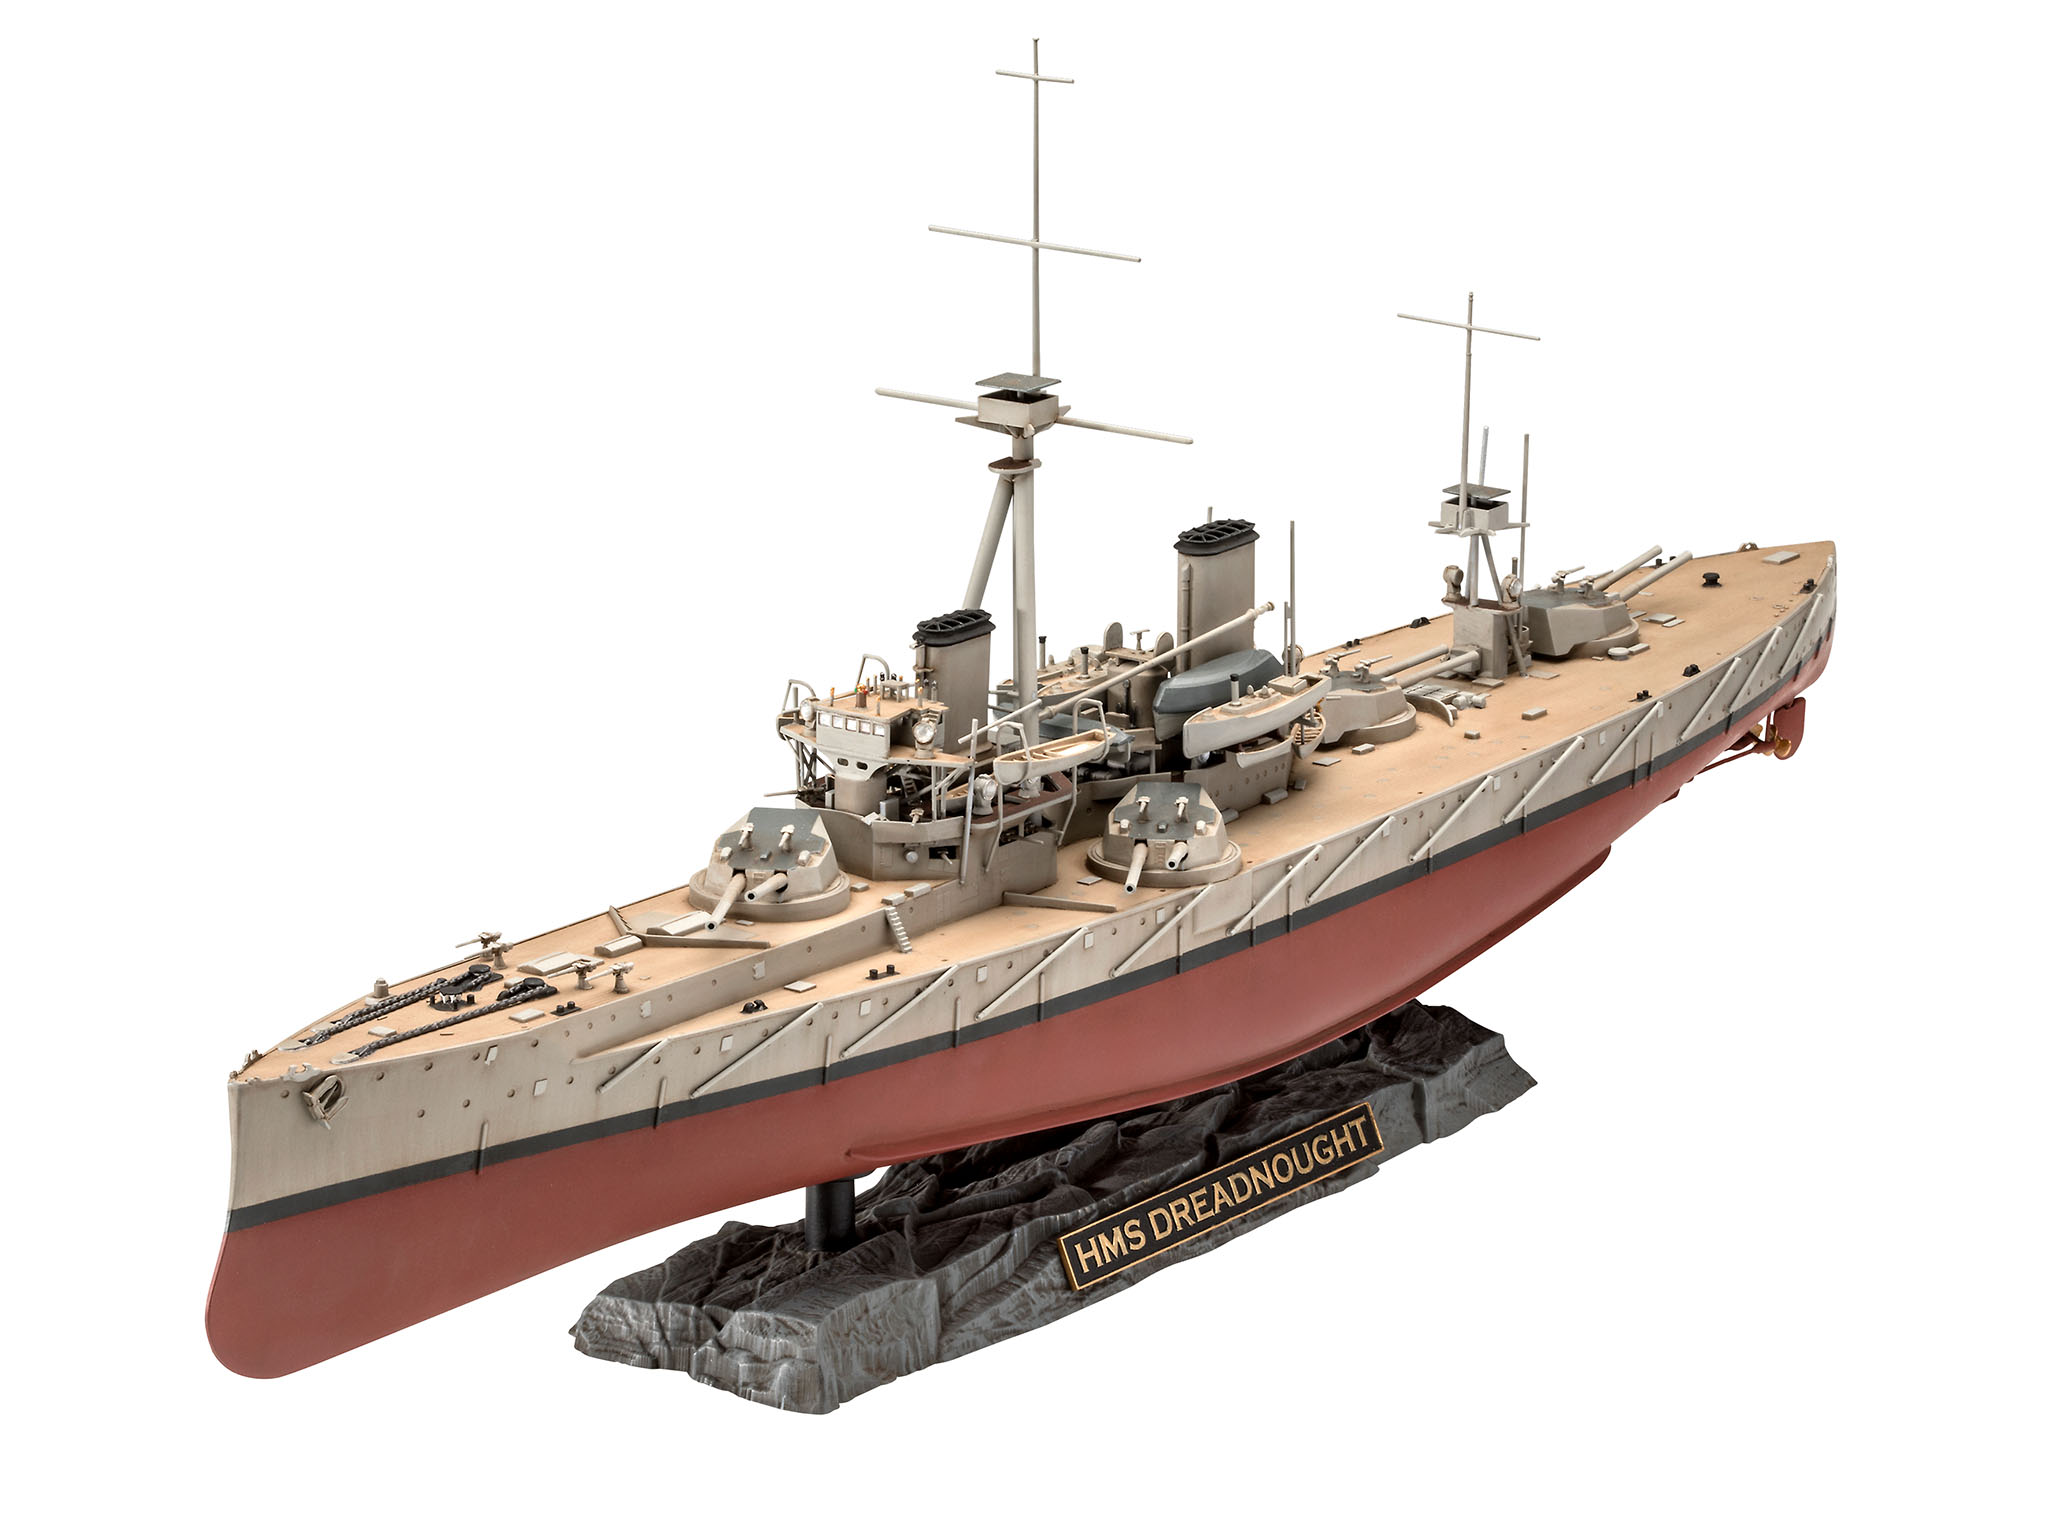 1/350 HMS Dreadnought